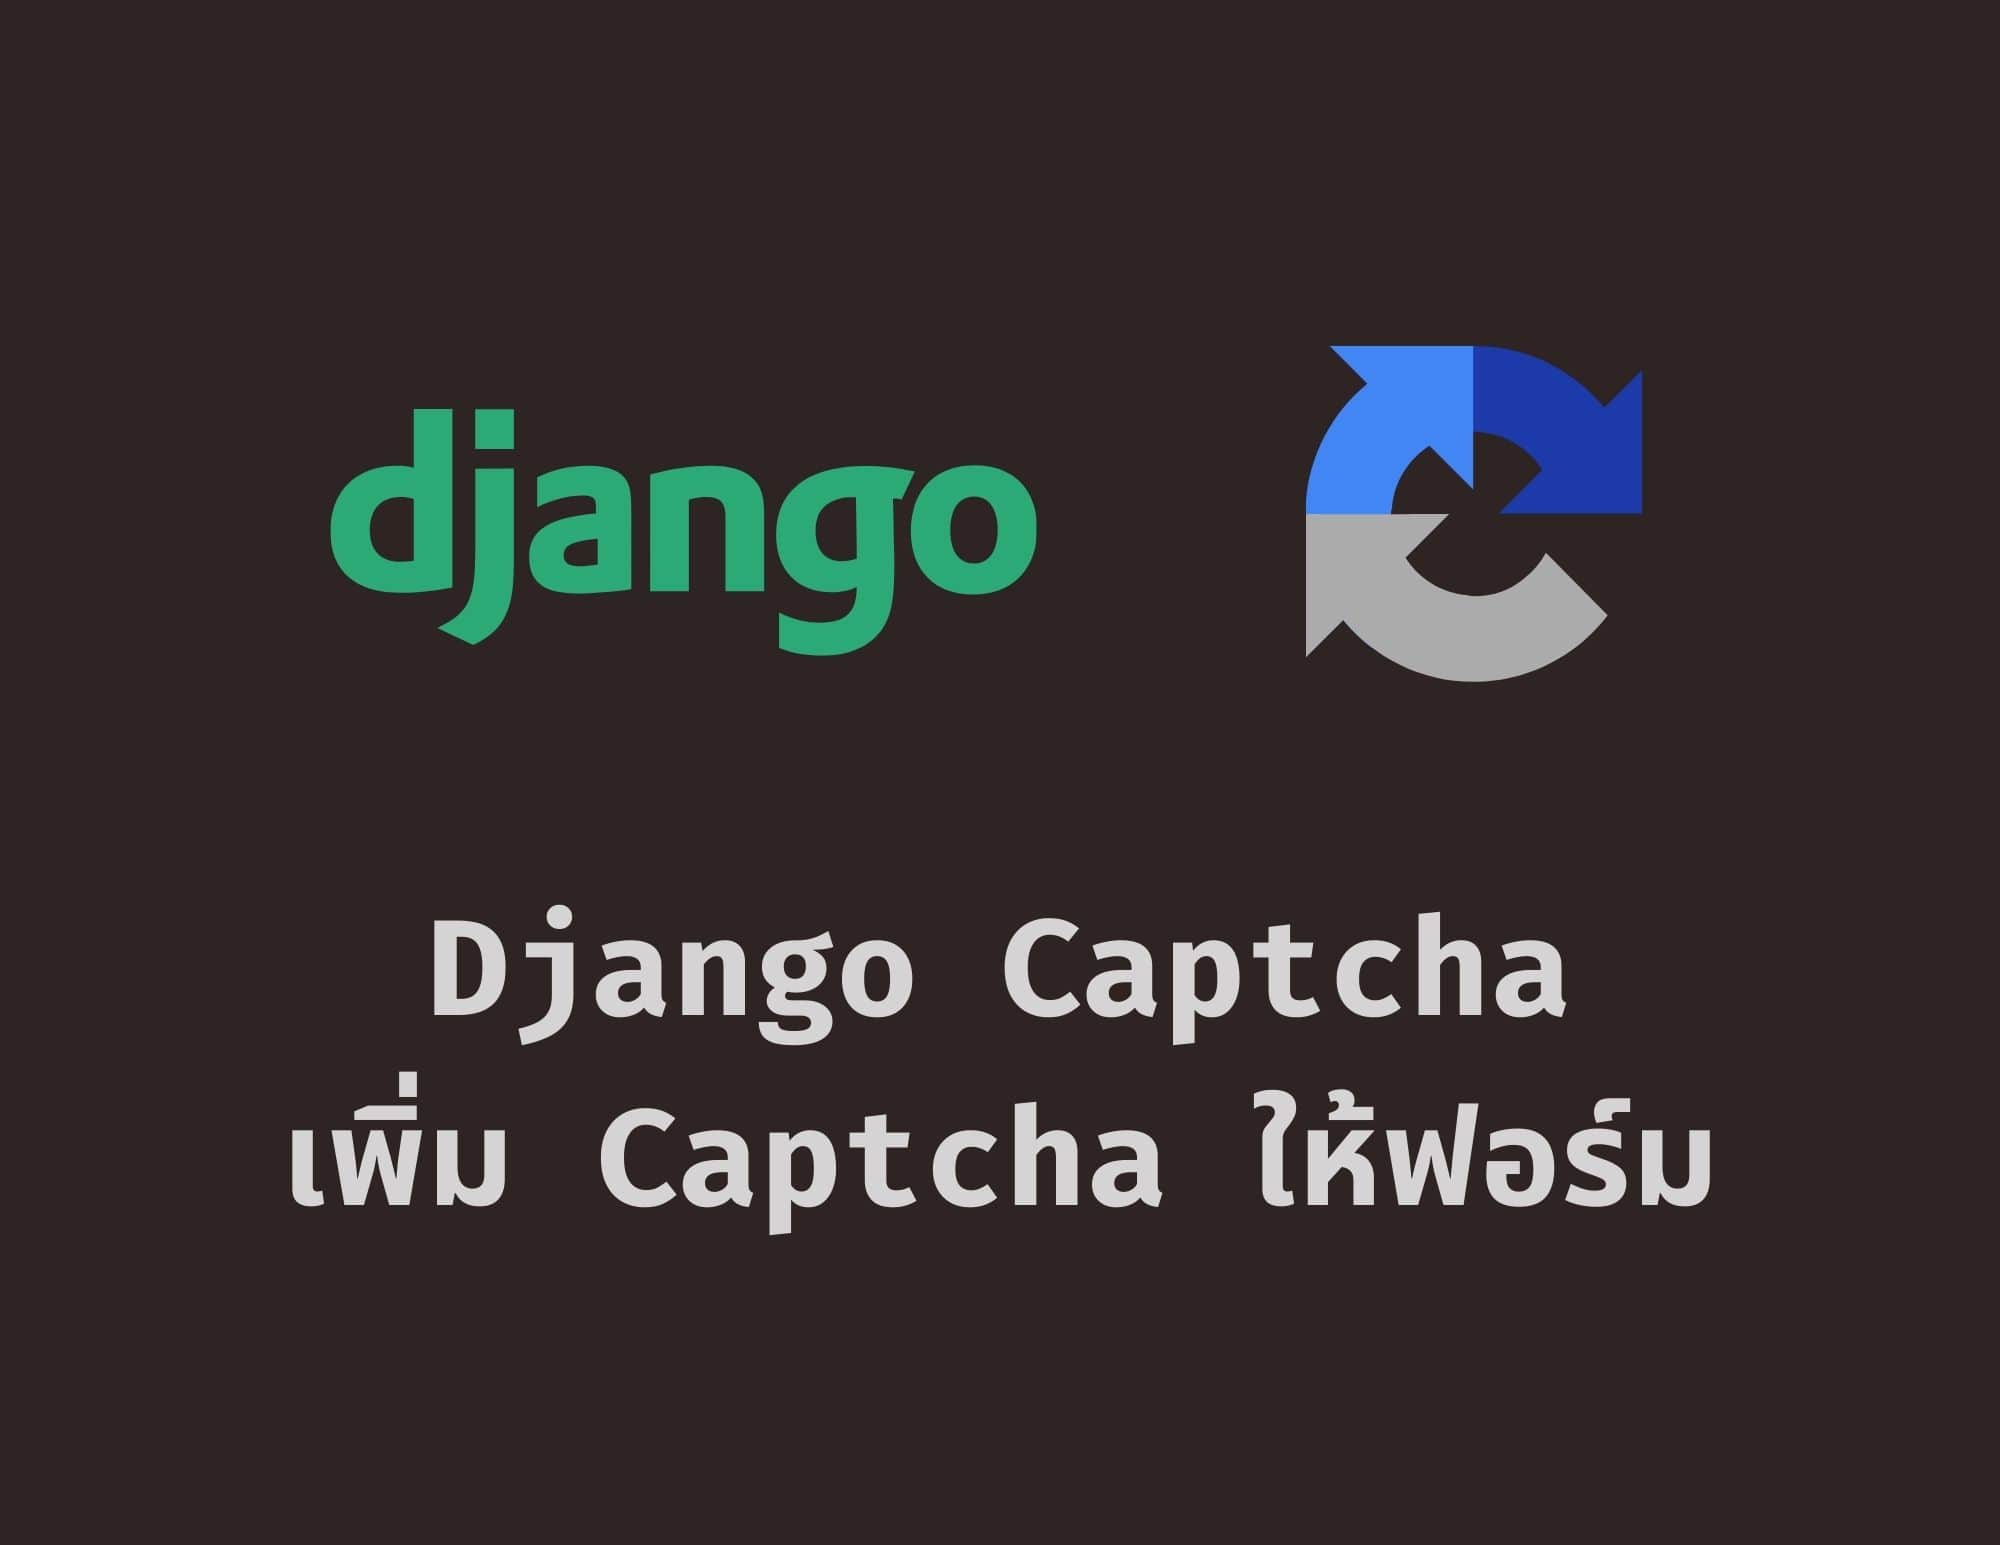 สร้าง Captcha แบบง่ายสุด ๆ ให้กับ Django